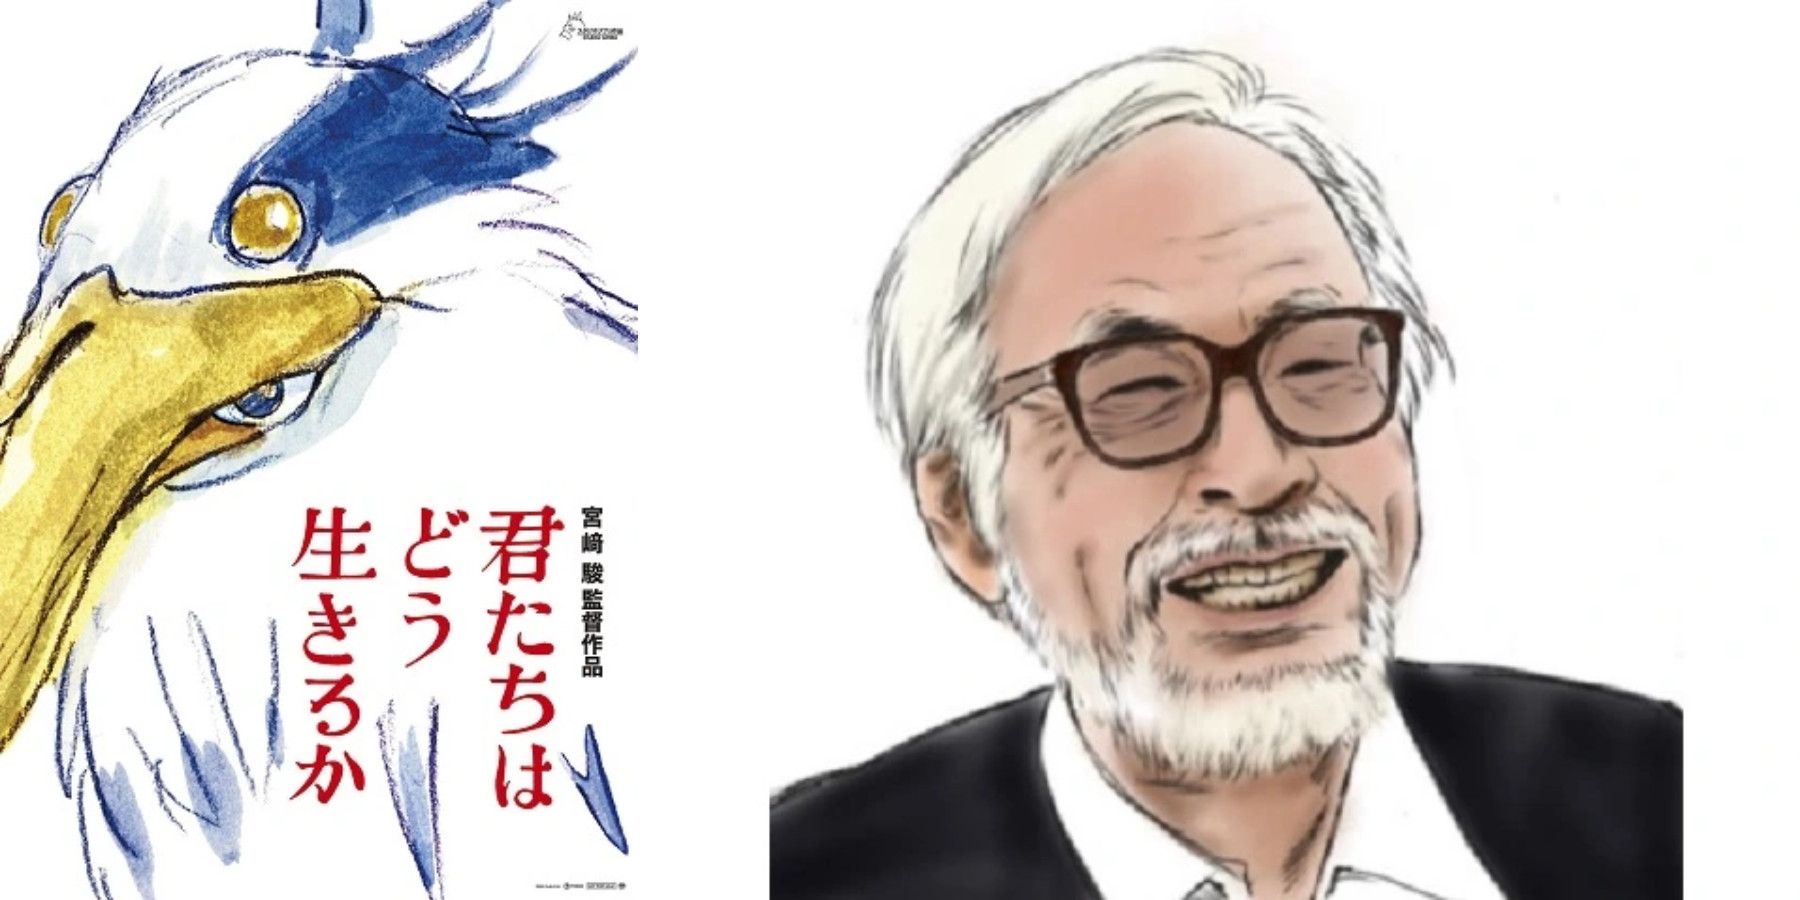 how-do-you-live-studio-ghibli-miyazaki